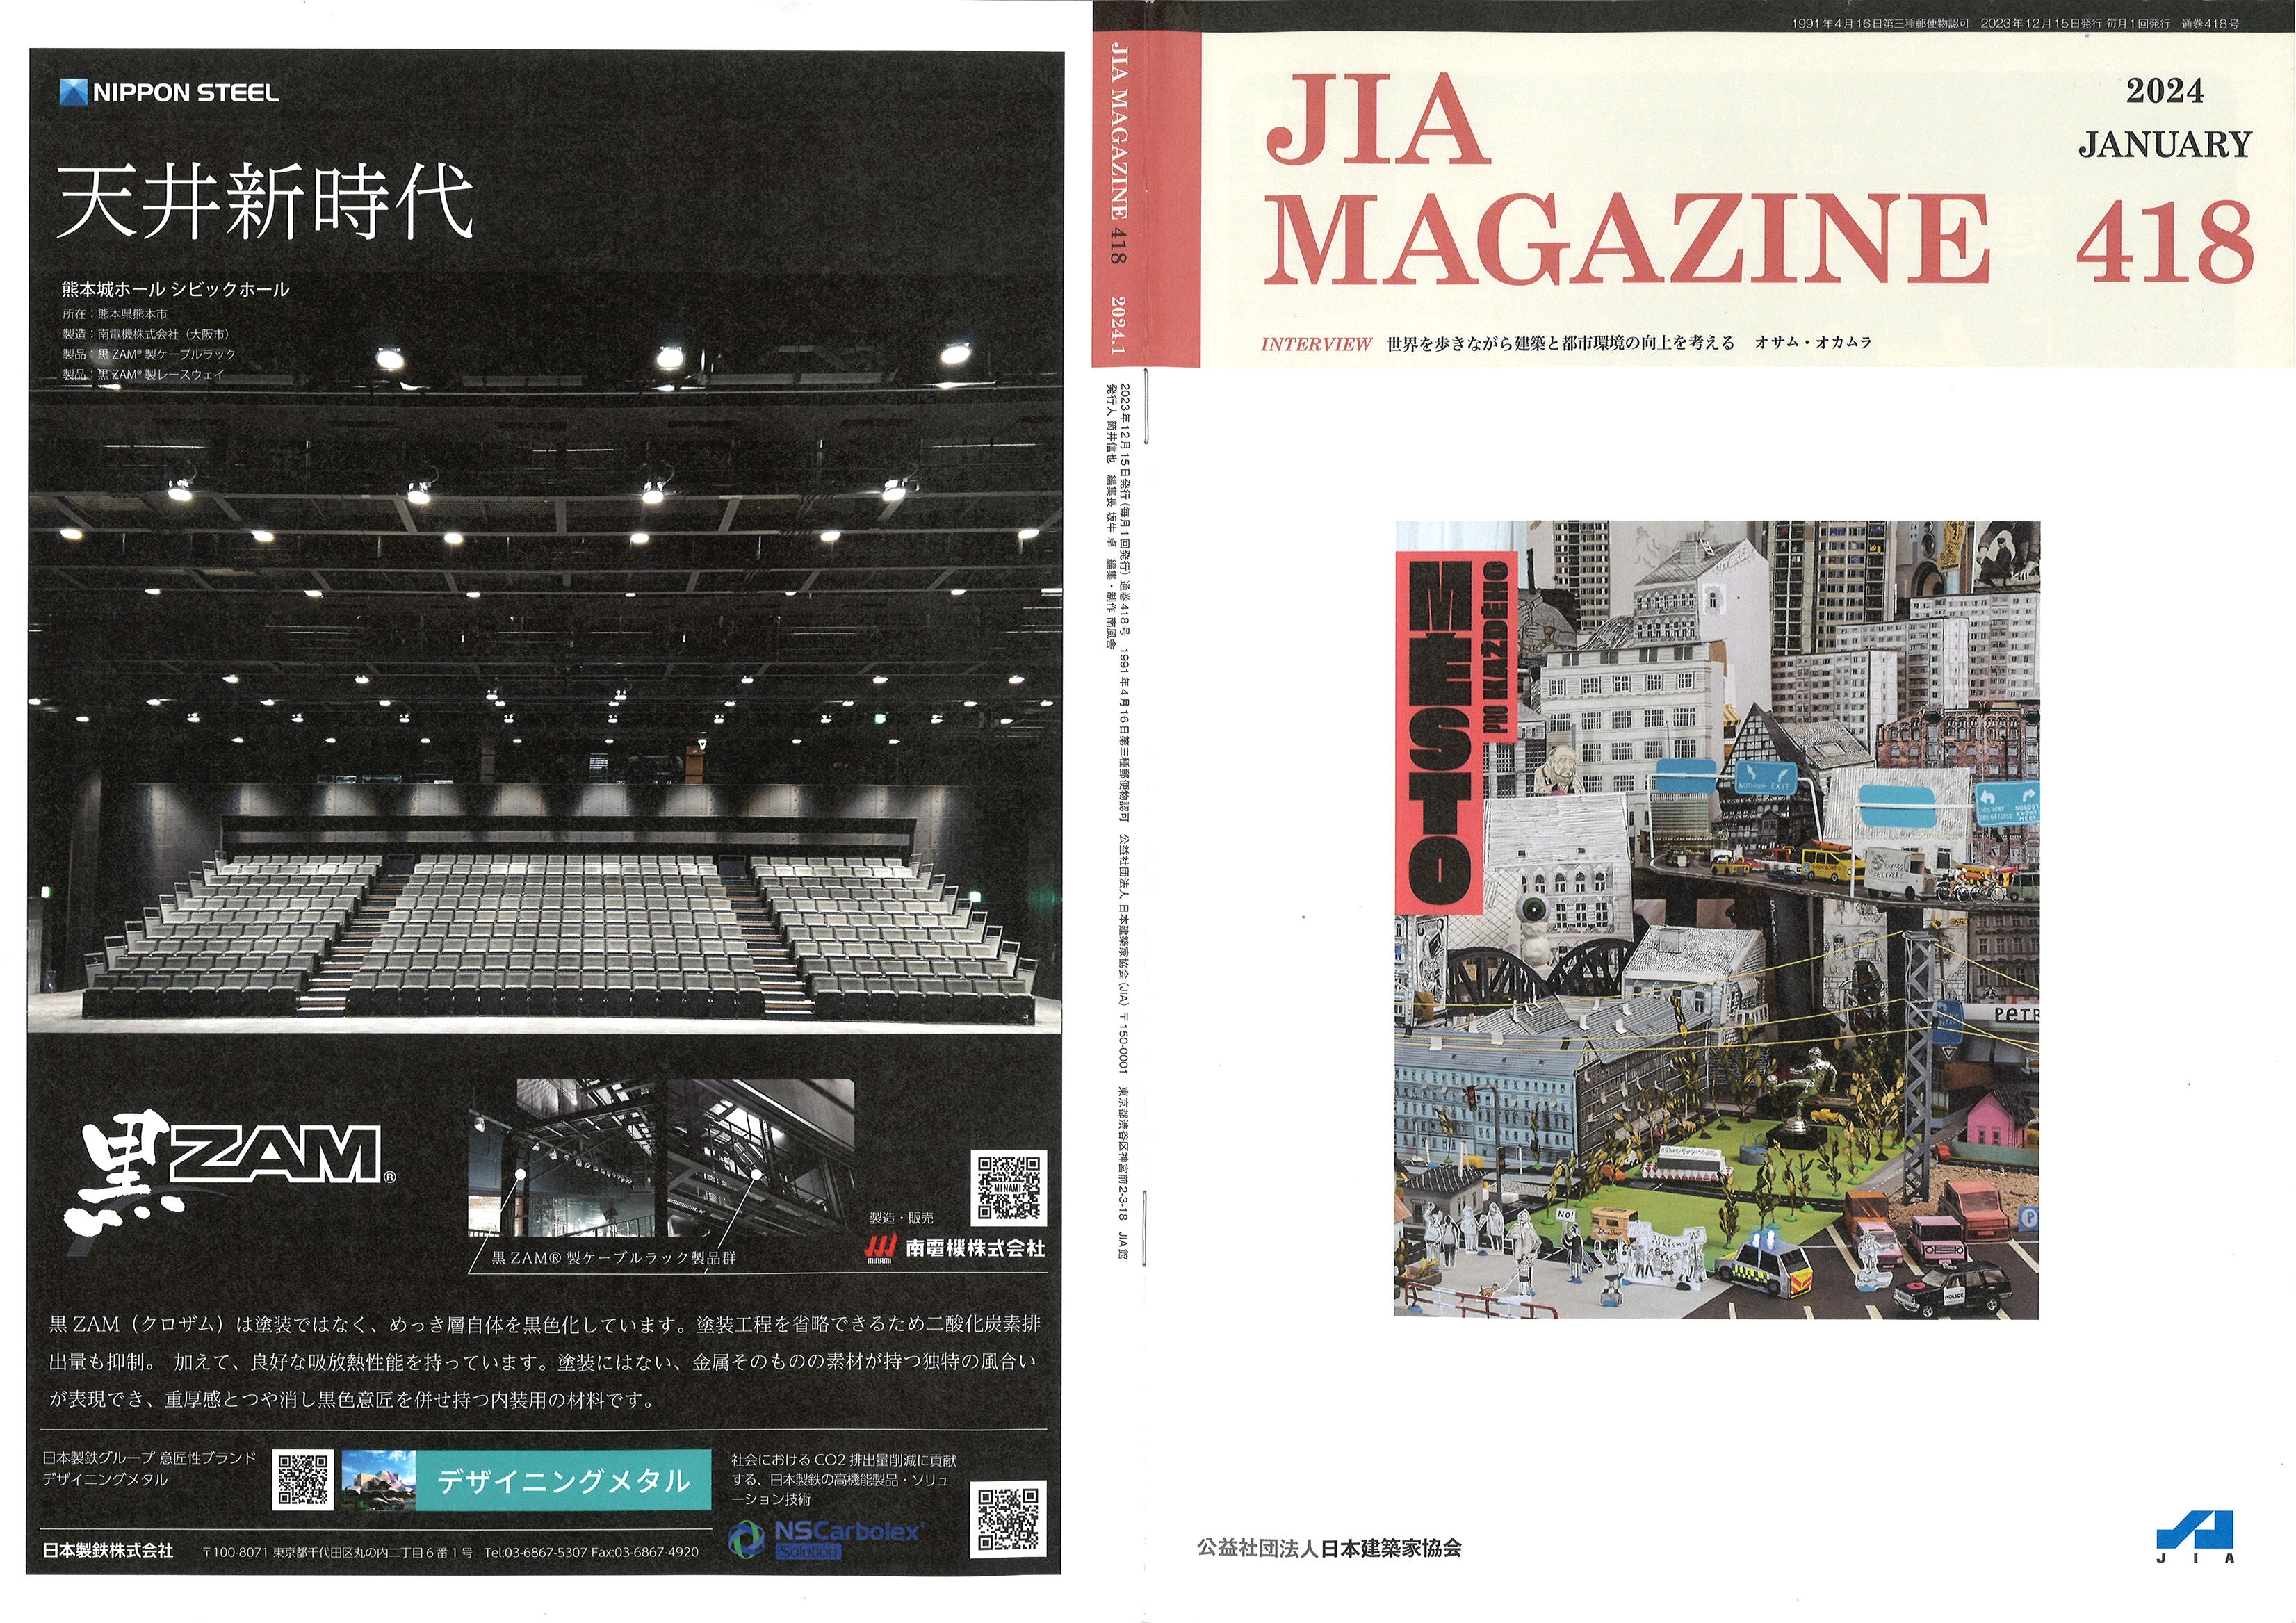 公益社団法人 日本建築家協会（JIA）様の機関誌「JIA MAGAZINE 